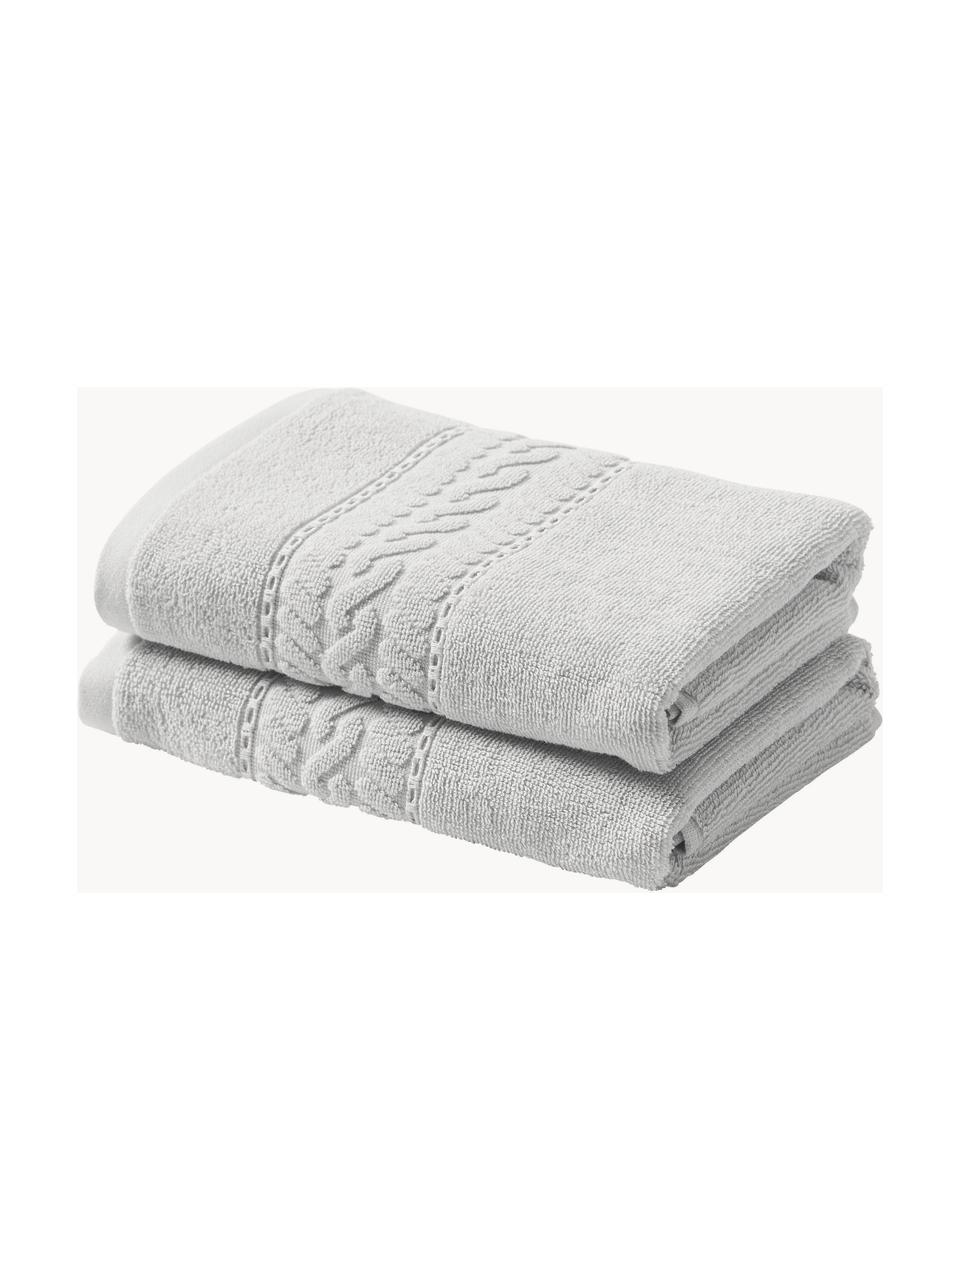 Handtuch Cordelia in verschiedenen Grössen, 100 % Baumwolle, Hellgrau, Handtuch, B 50 x L 100 cm, 2 Stück